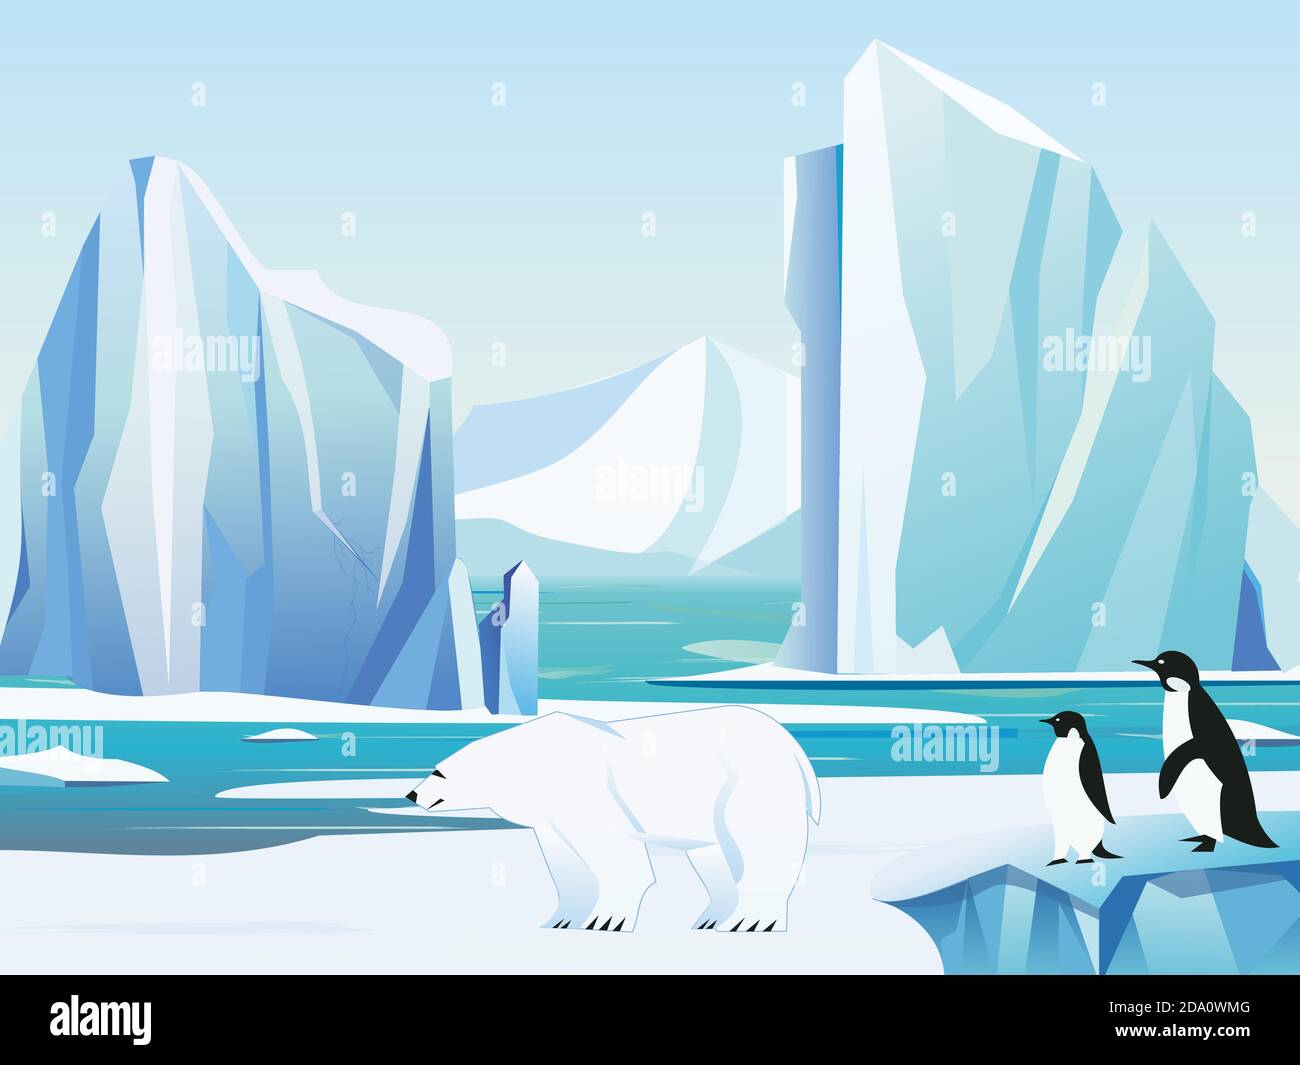 Illustrazione vettoriale paesaggio artico con orso polare e pinguini, iceberg e montagne. Clima freddo sfondo invernale. Illustrazione Vettoriale